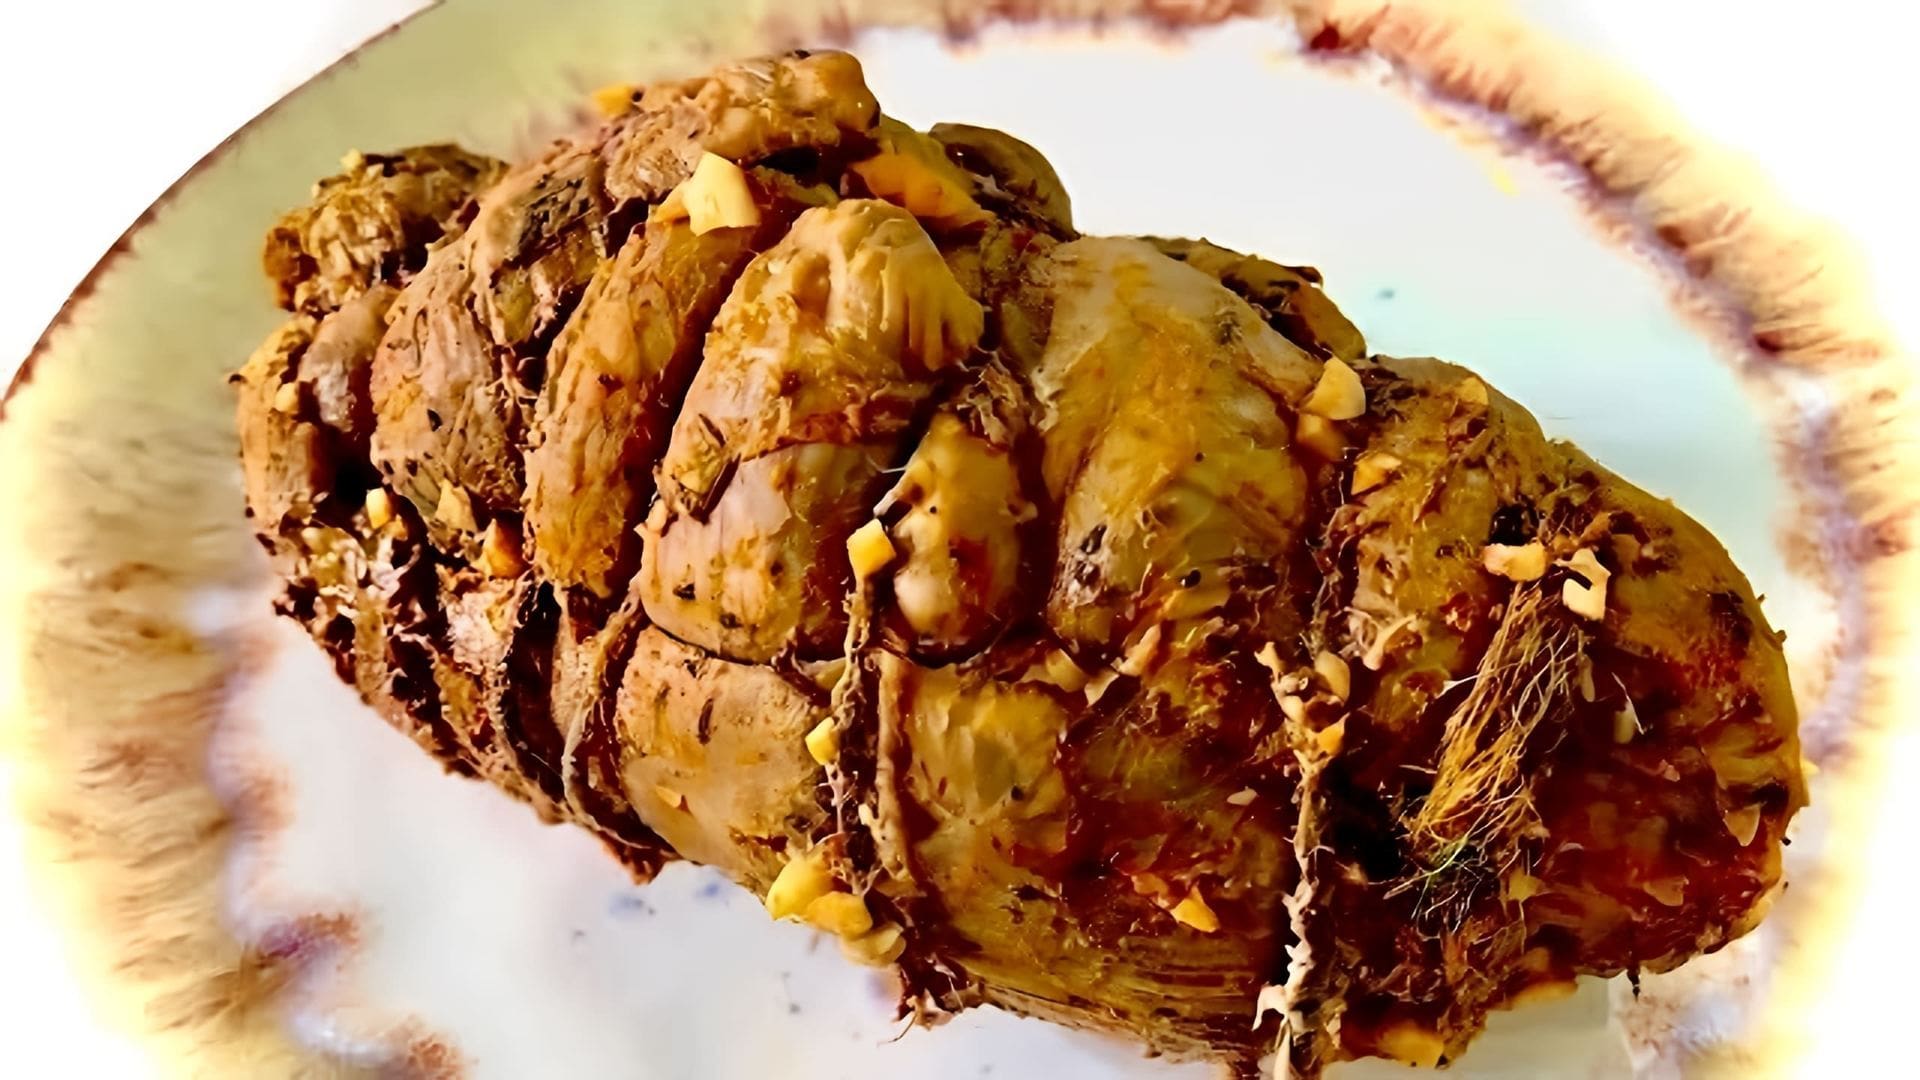 В данном видео демонстрируется рецепт приготовления буженины из бедра индейки в духовке